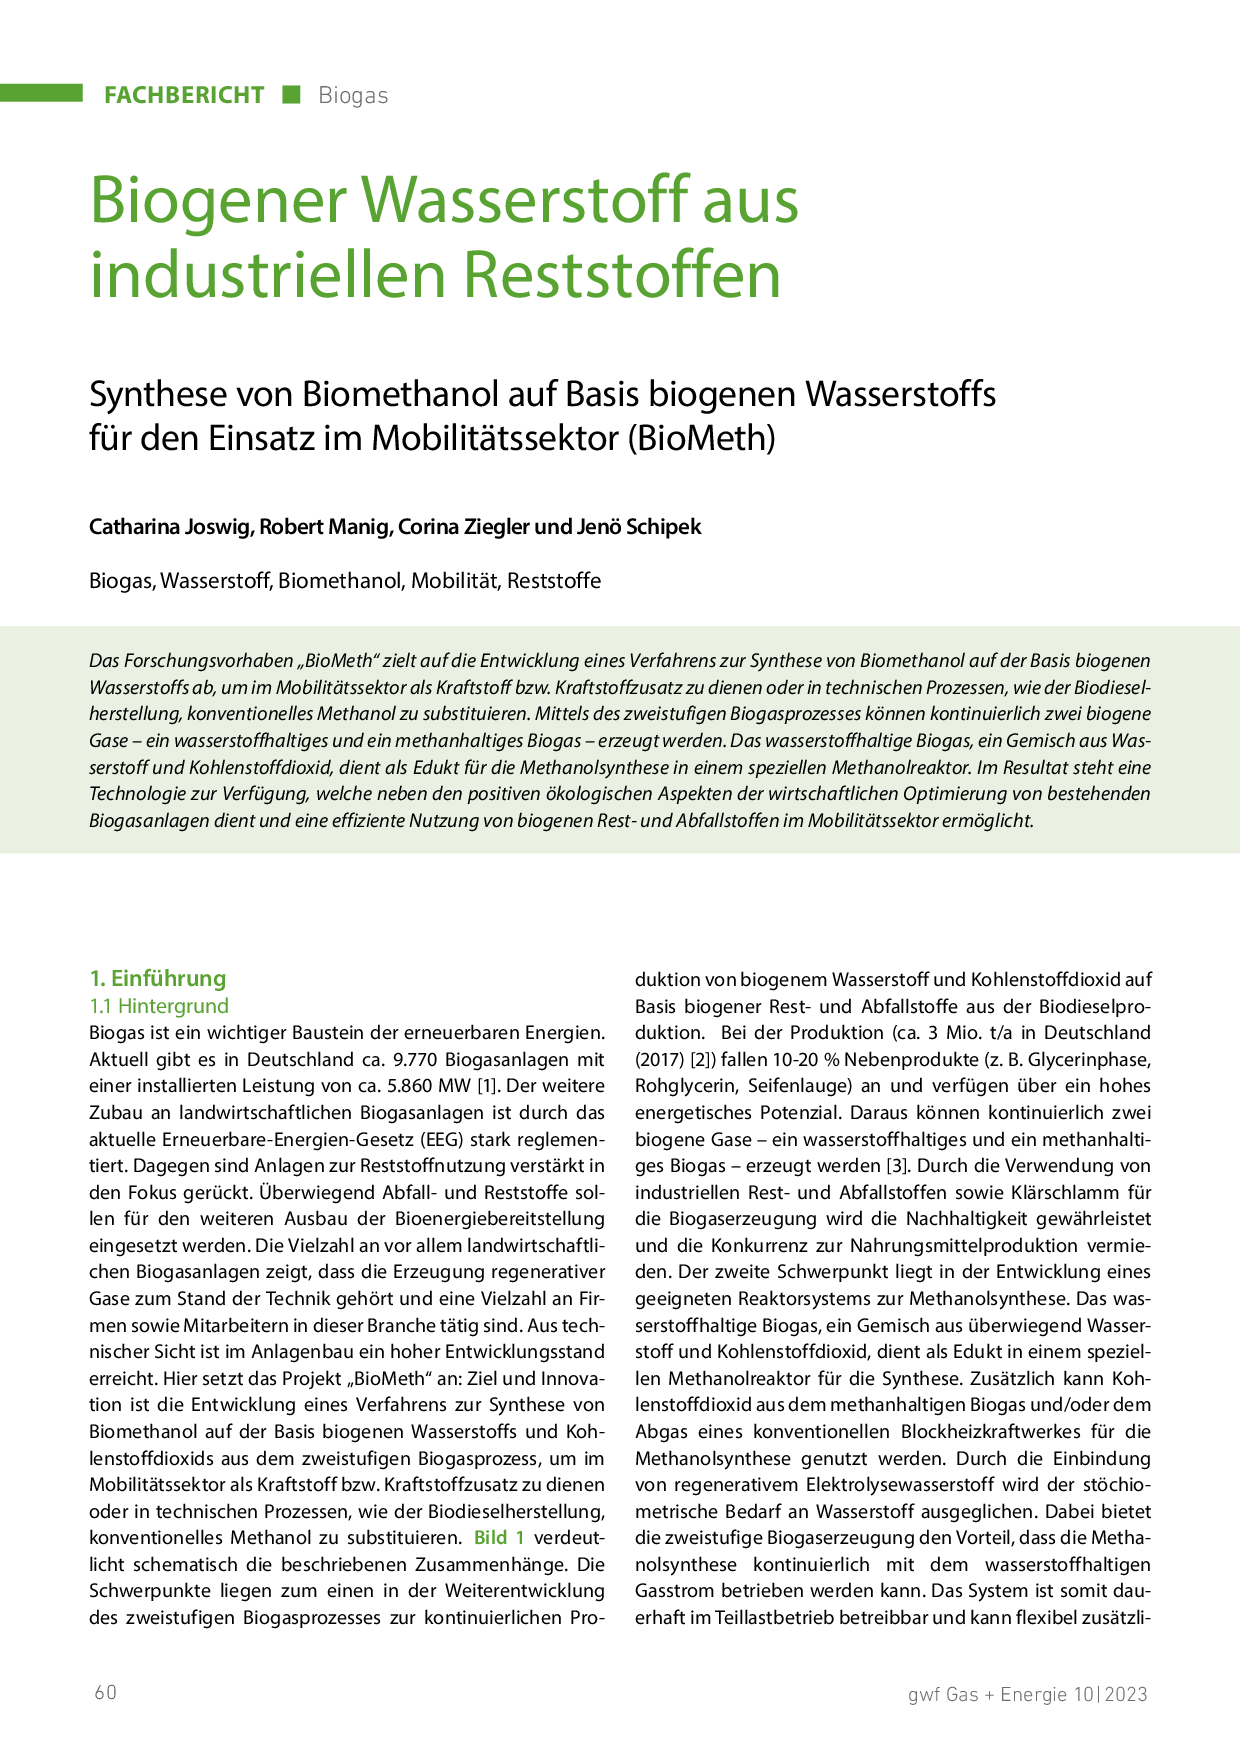 Biogener Wasserstoff aus industriellen Reststoffen